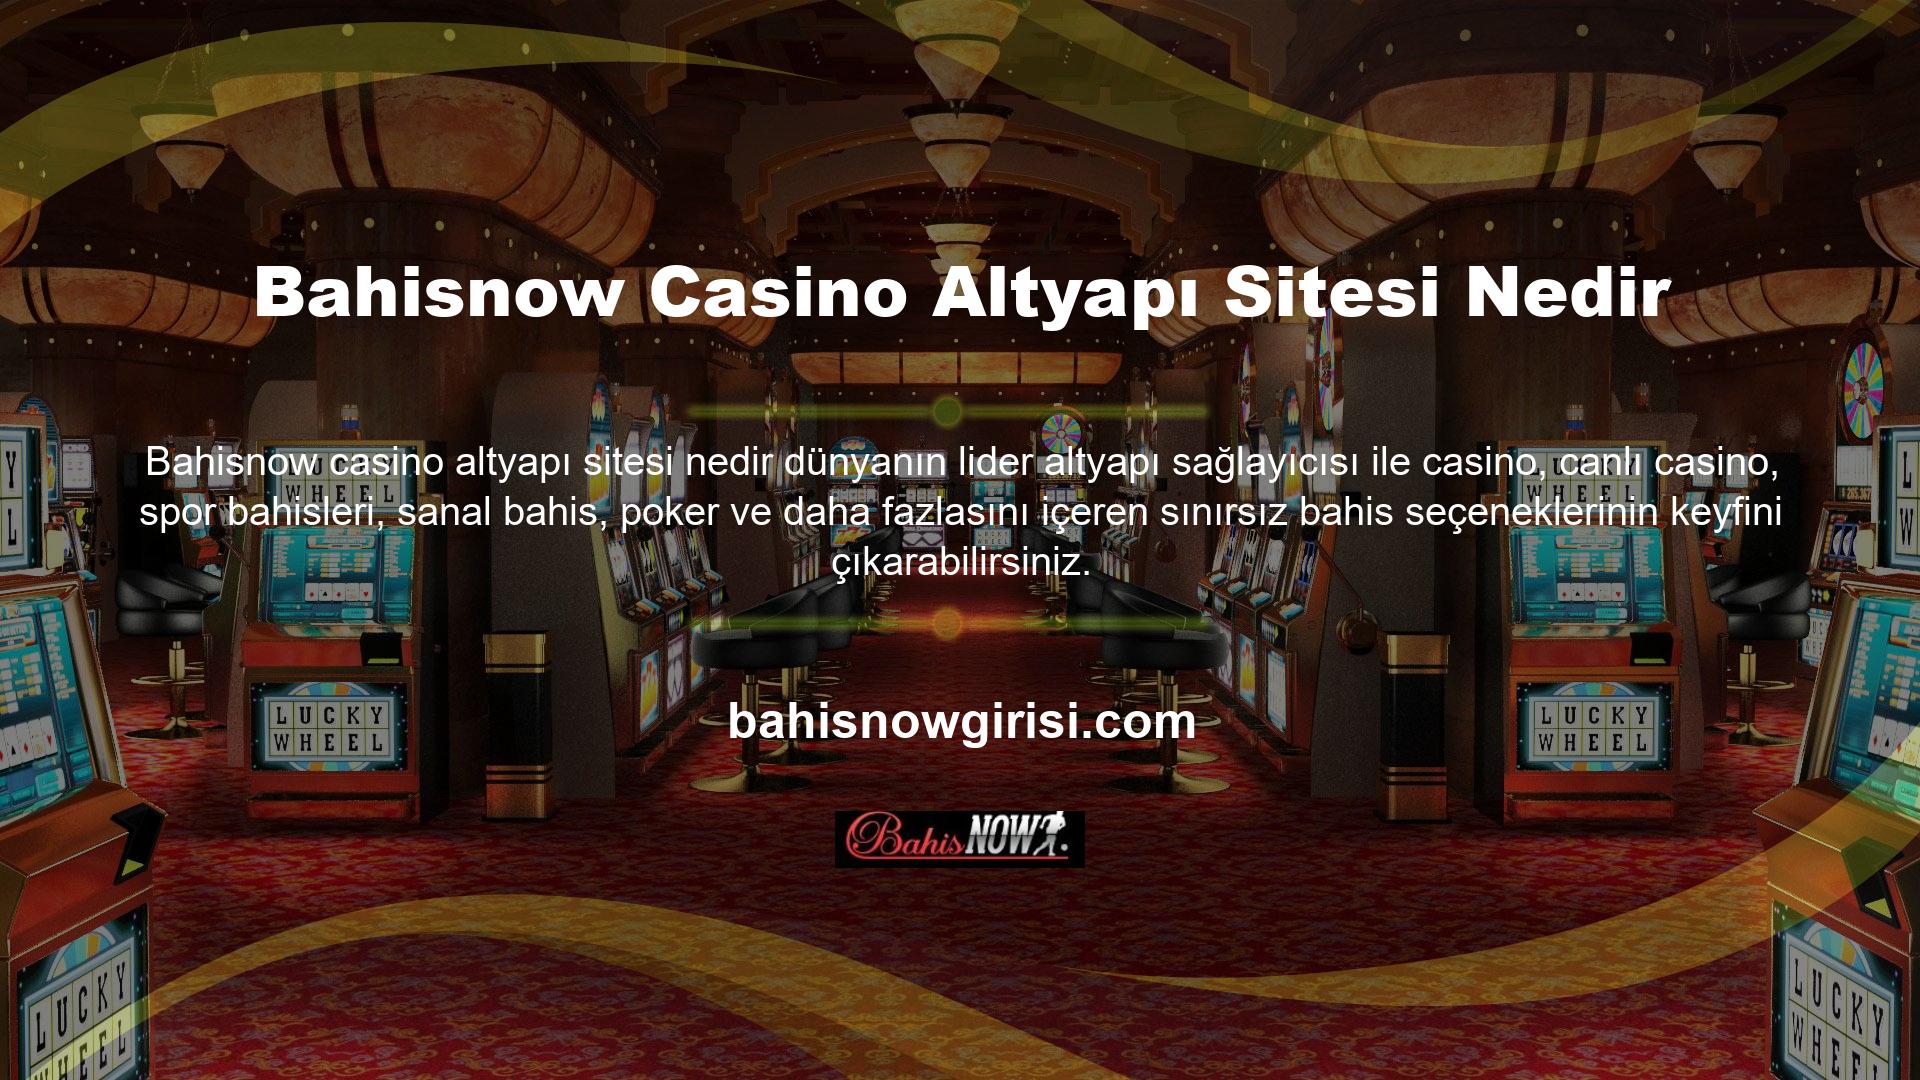 Bahisnow casino altyapı sitesi nedir? Bu casino sitesi aynı zamanda Türkçe, Almanca, İngilizce, Fransızca ve Rusça dillerinde de hizmet sunmakta, dünyanın her yerinden kullanıcı ağırlamakta ve şikayetlere hızlı bir şekilde yanıt vermektedir